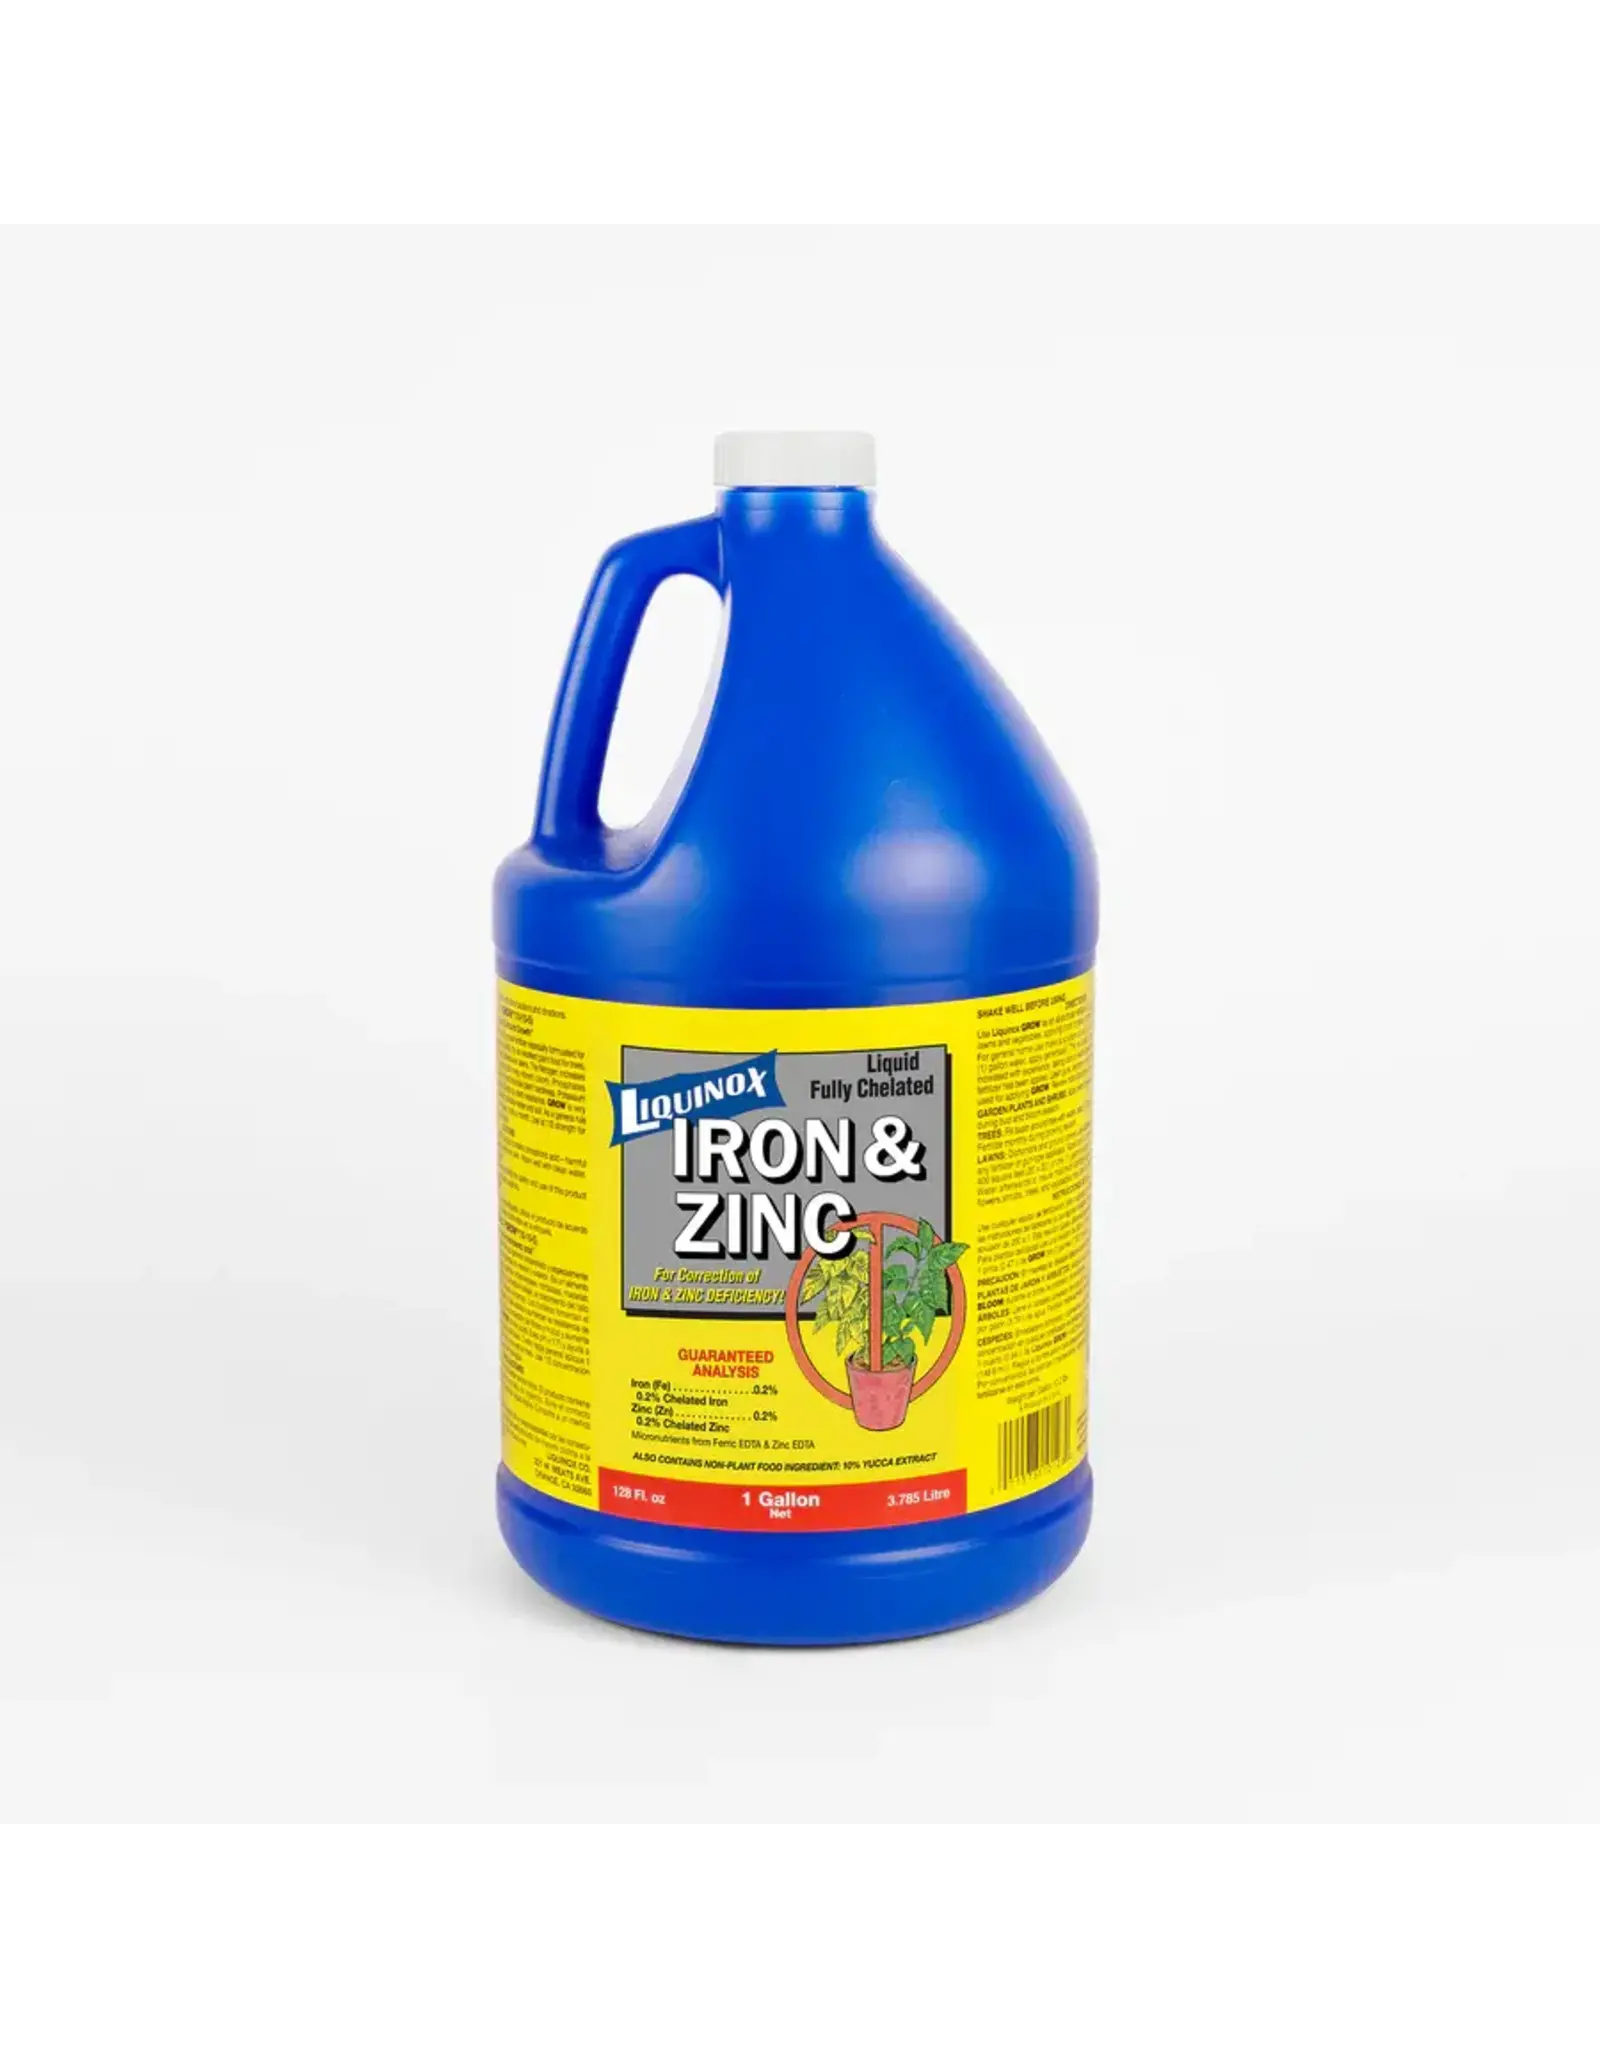 Liquinox Liquinox Iron and Zinc Liquid Plant Food Fertilizer Concentrate, 1 Gallon FS